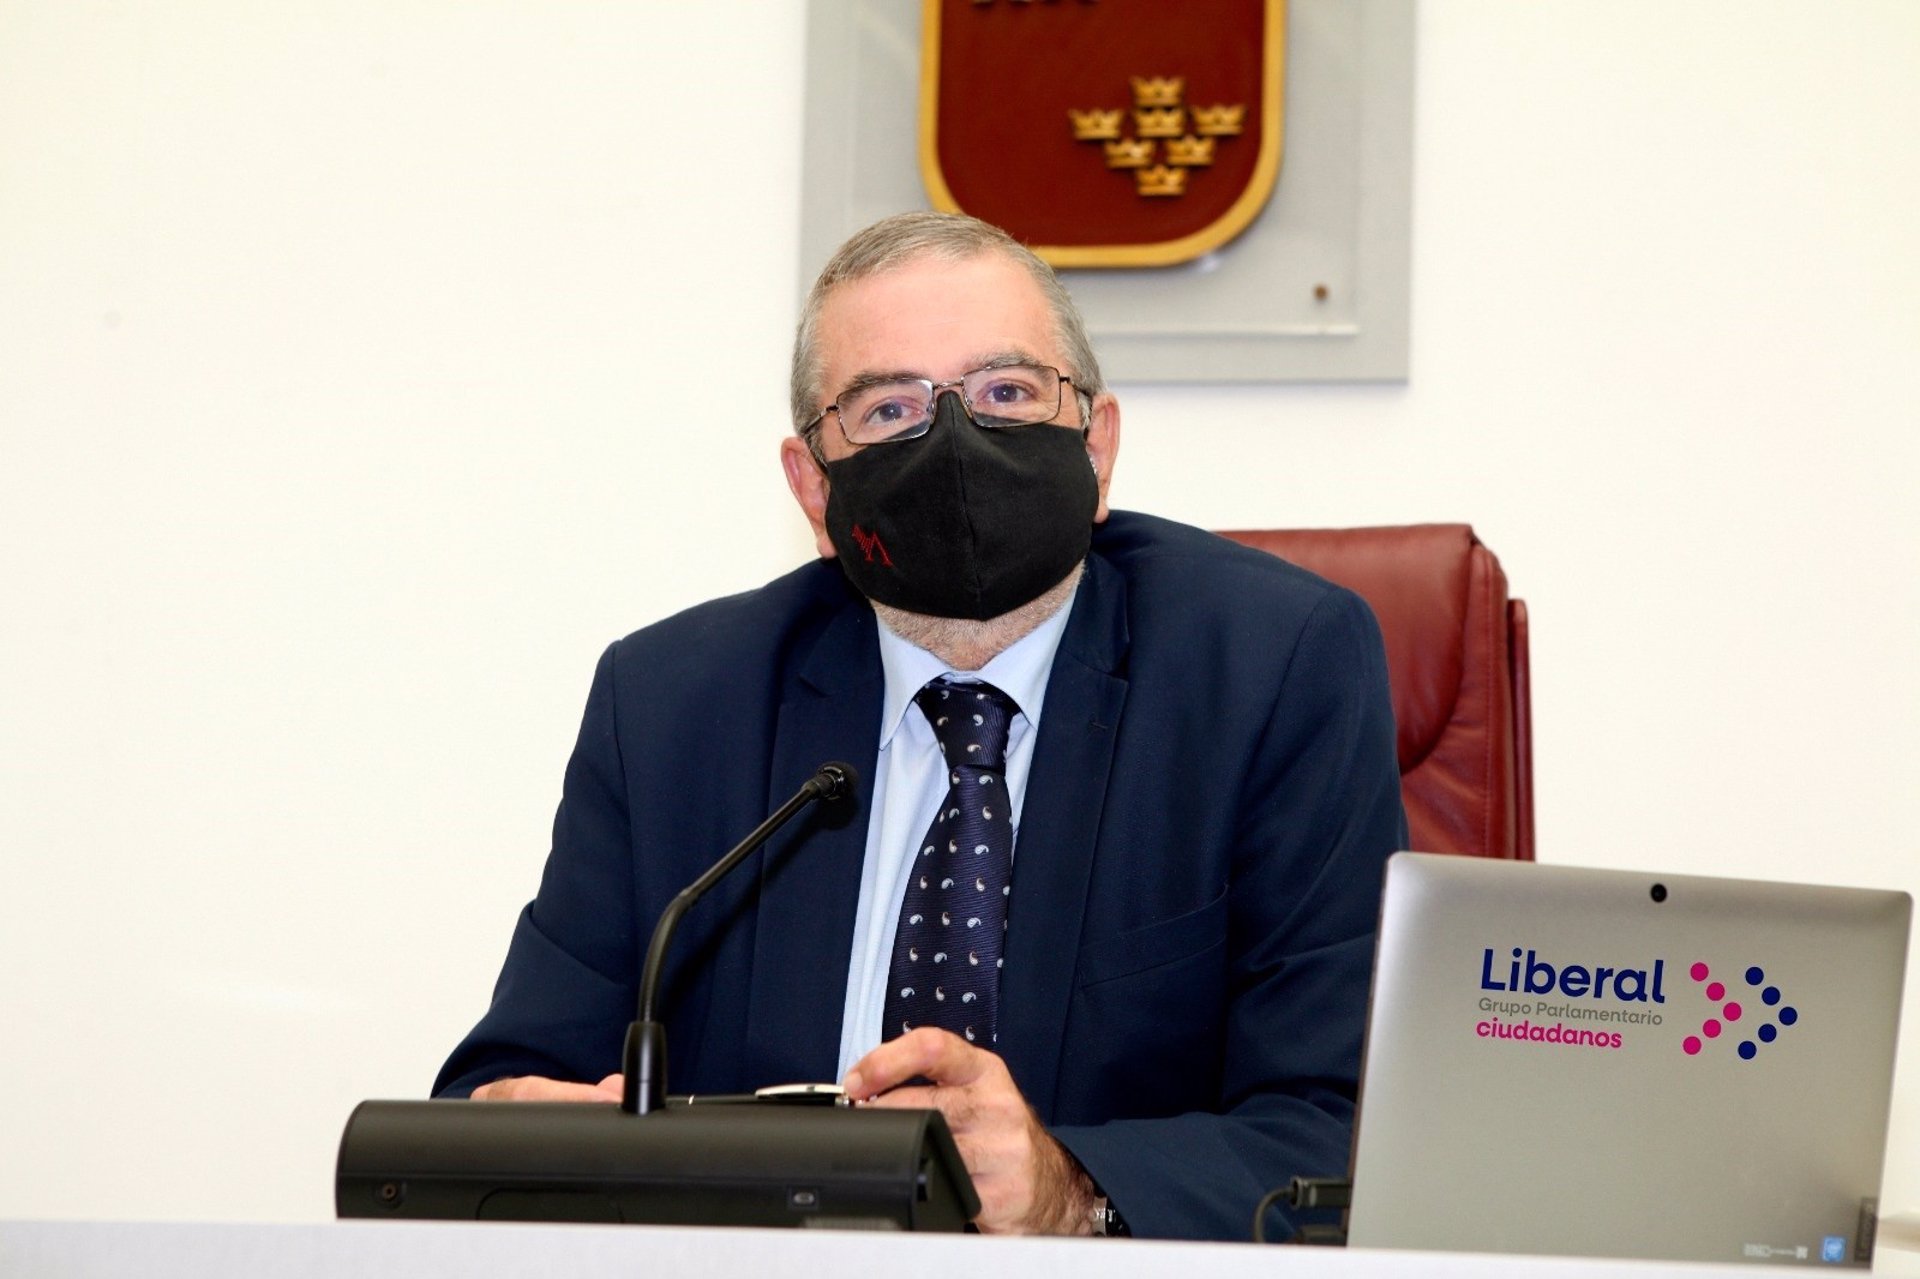 El presidente de la Asamblea de Murcia denuncia Cs por expulsarlo del partido